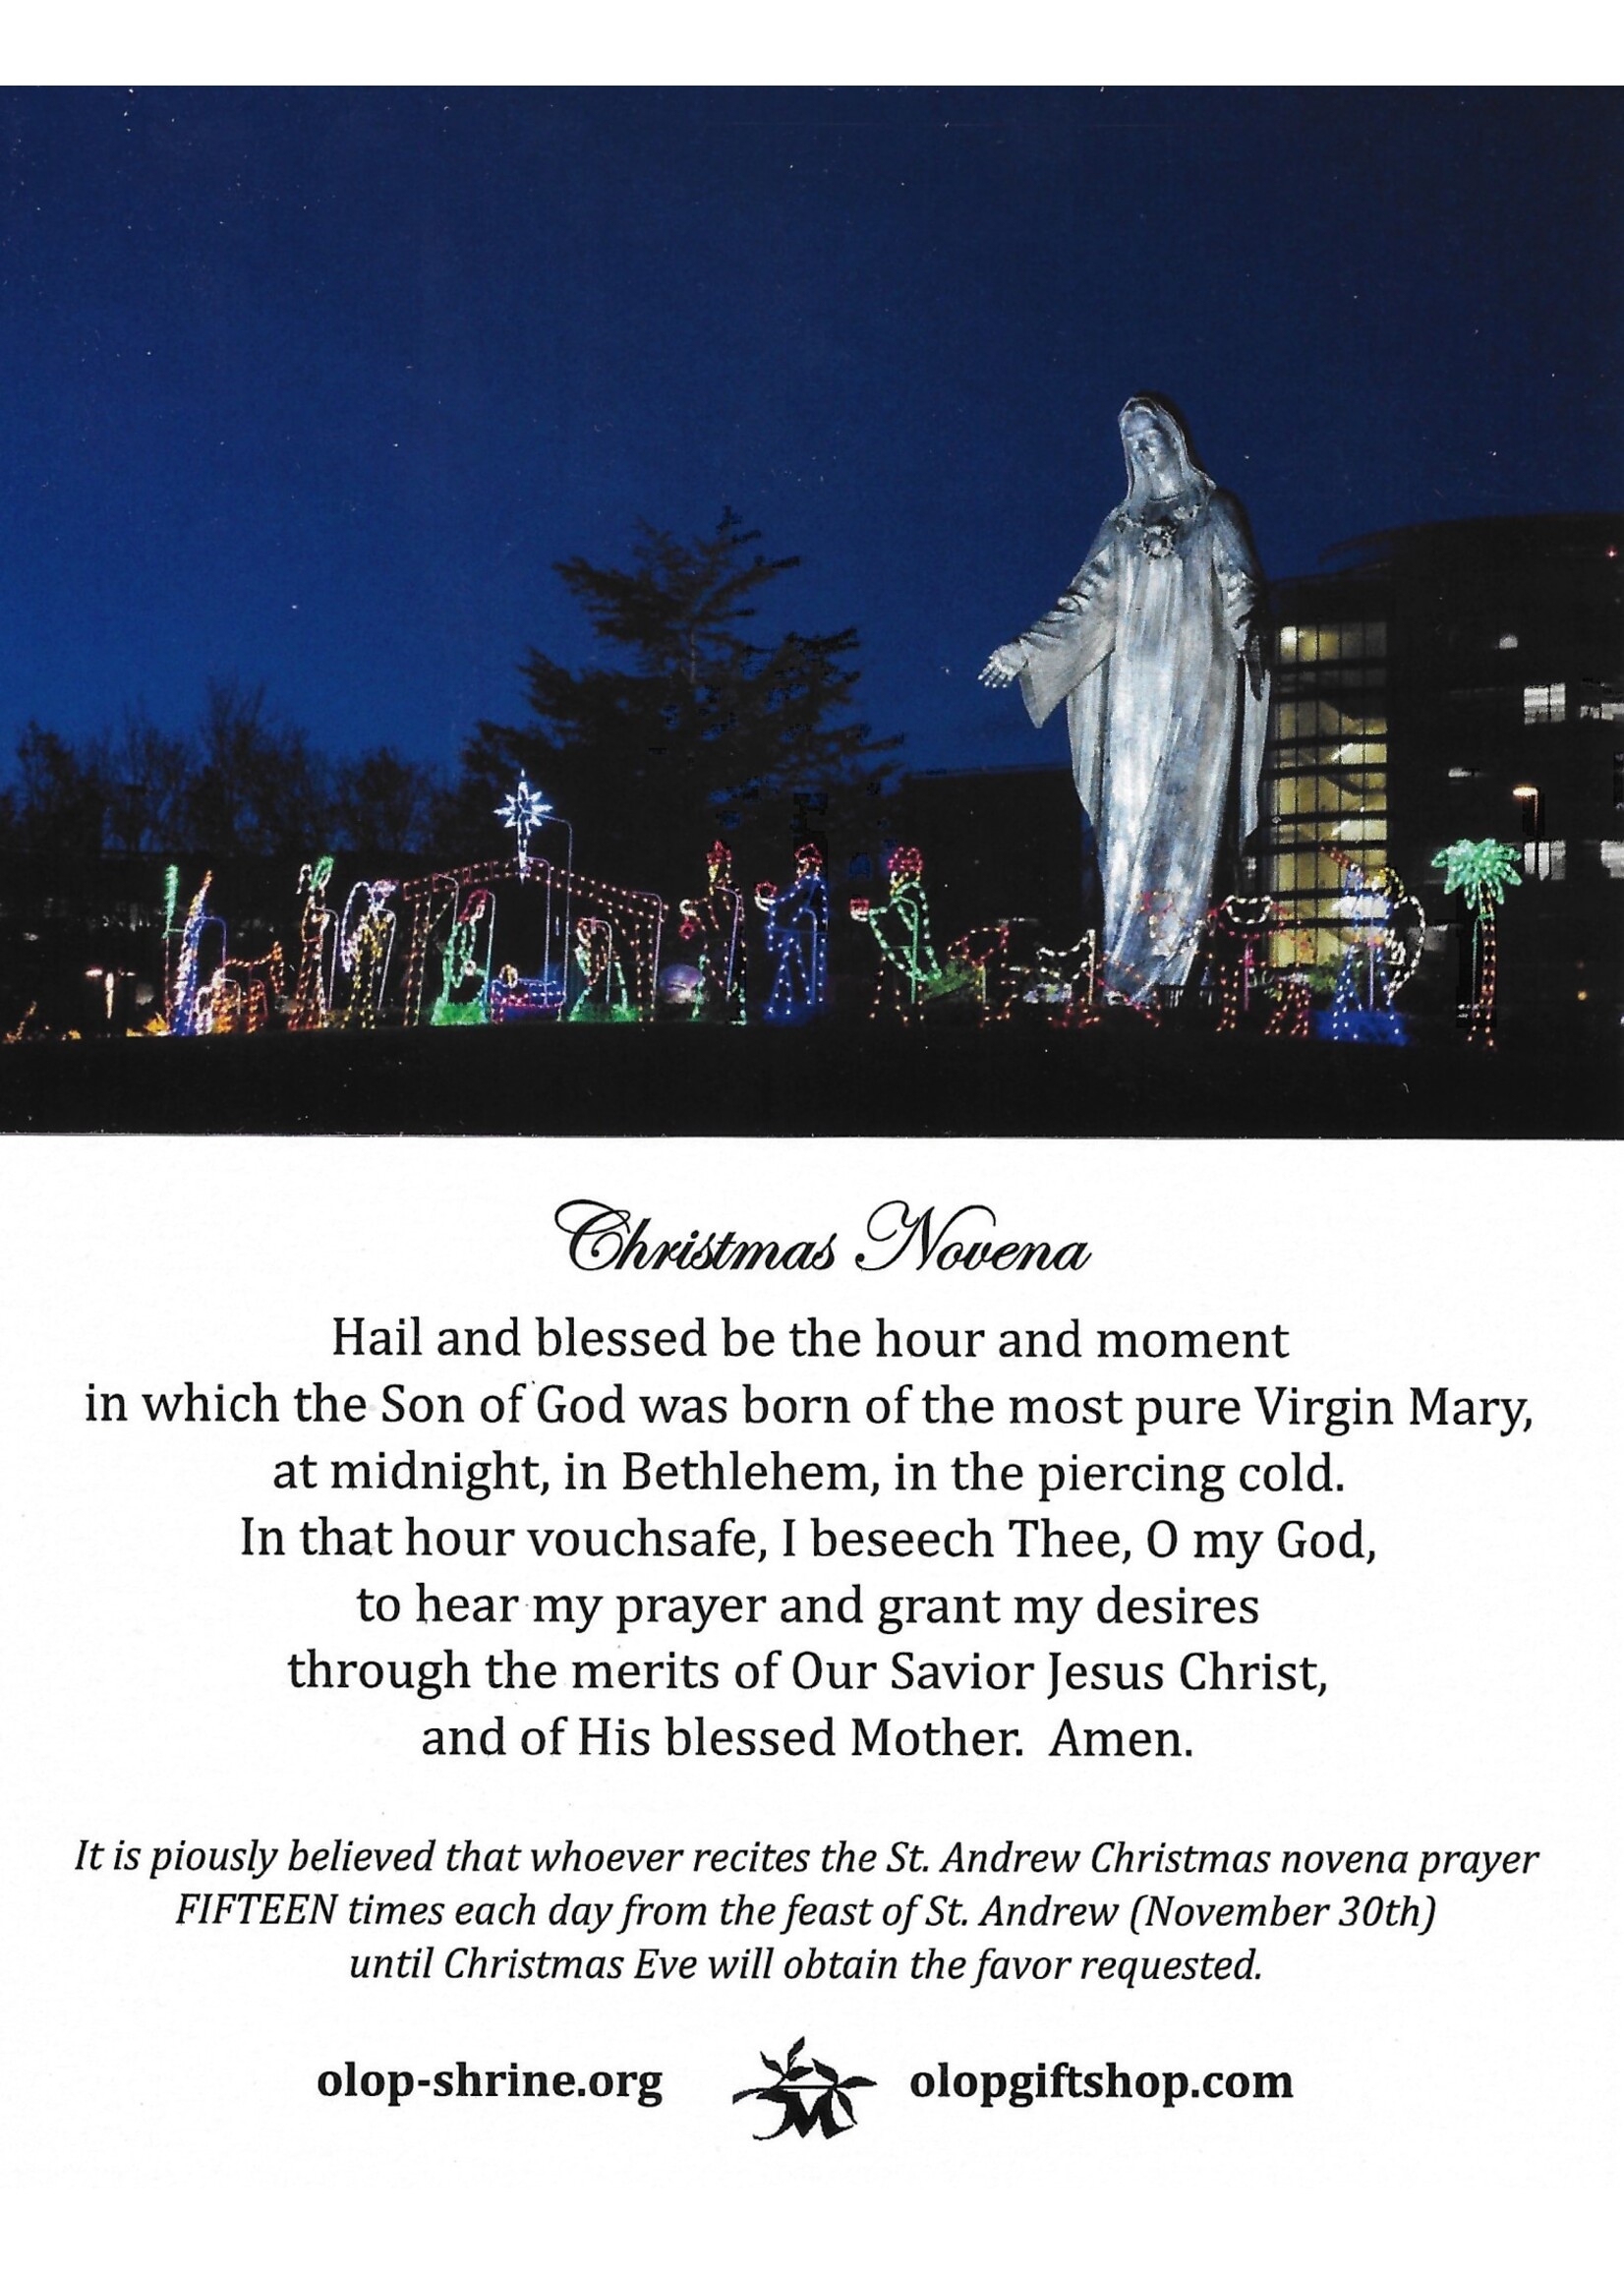 St Andrew Christmas Novena Prayer Card